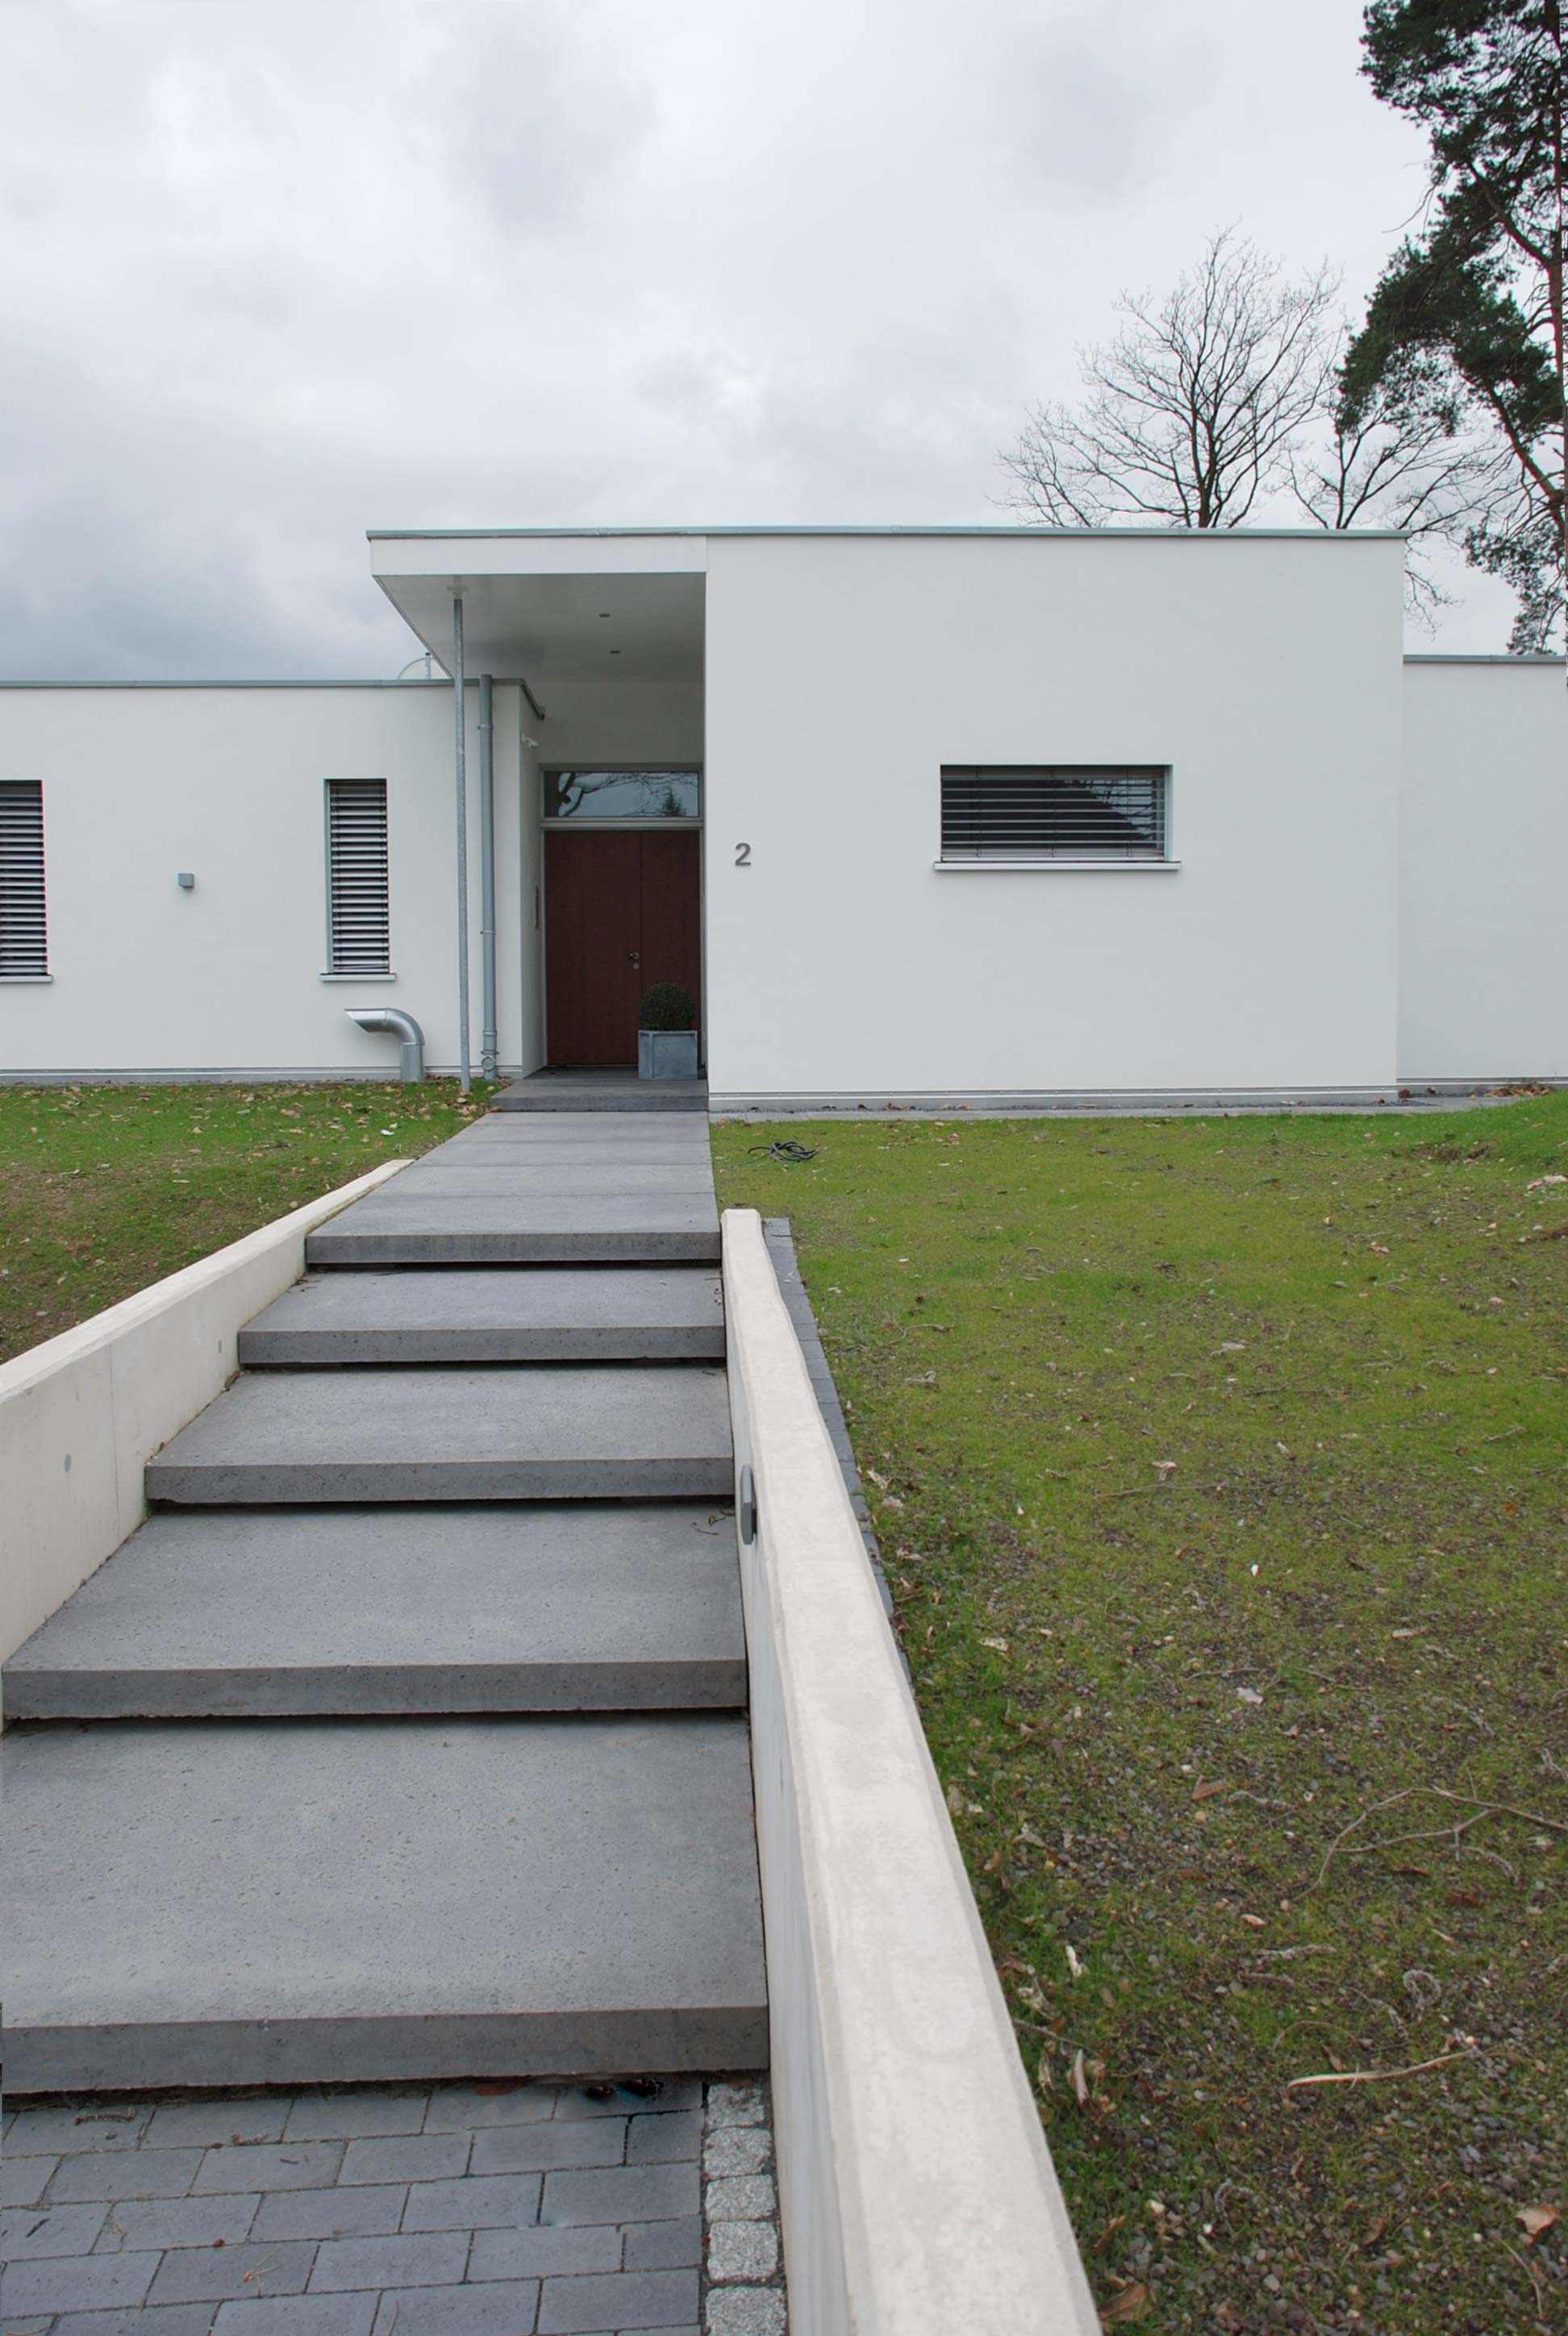 Einfamilienhaus, Kay Künzel, raum für architektur